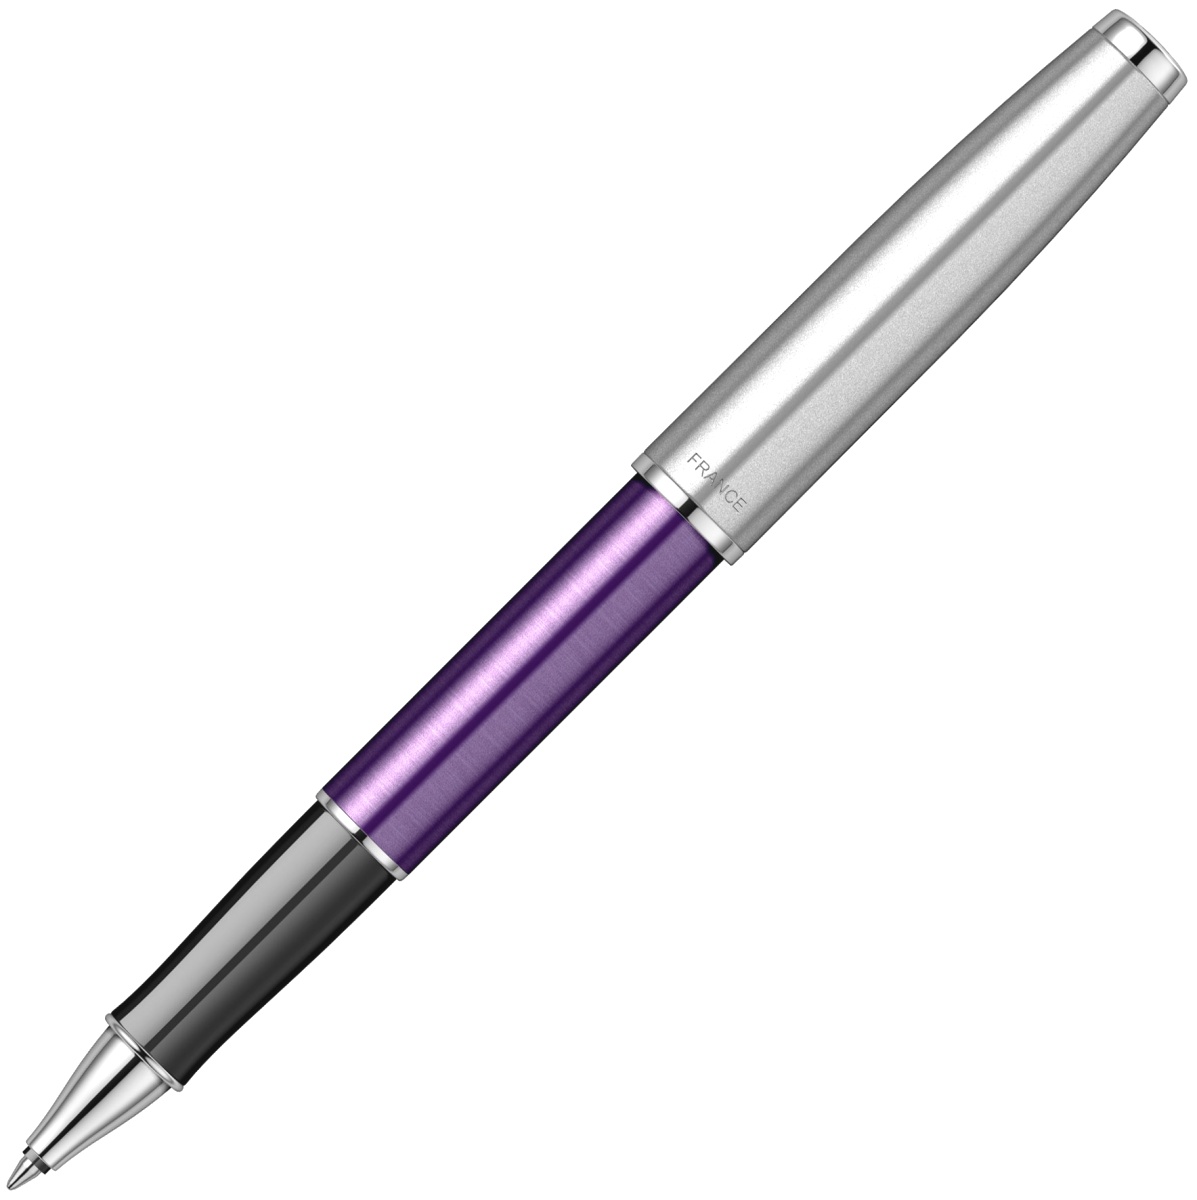  Ручка-роллер Parker Sonnet Essential SB T545, Violet CT, фото 3